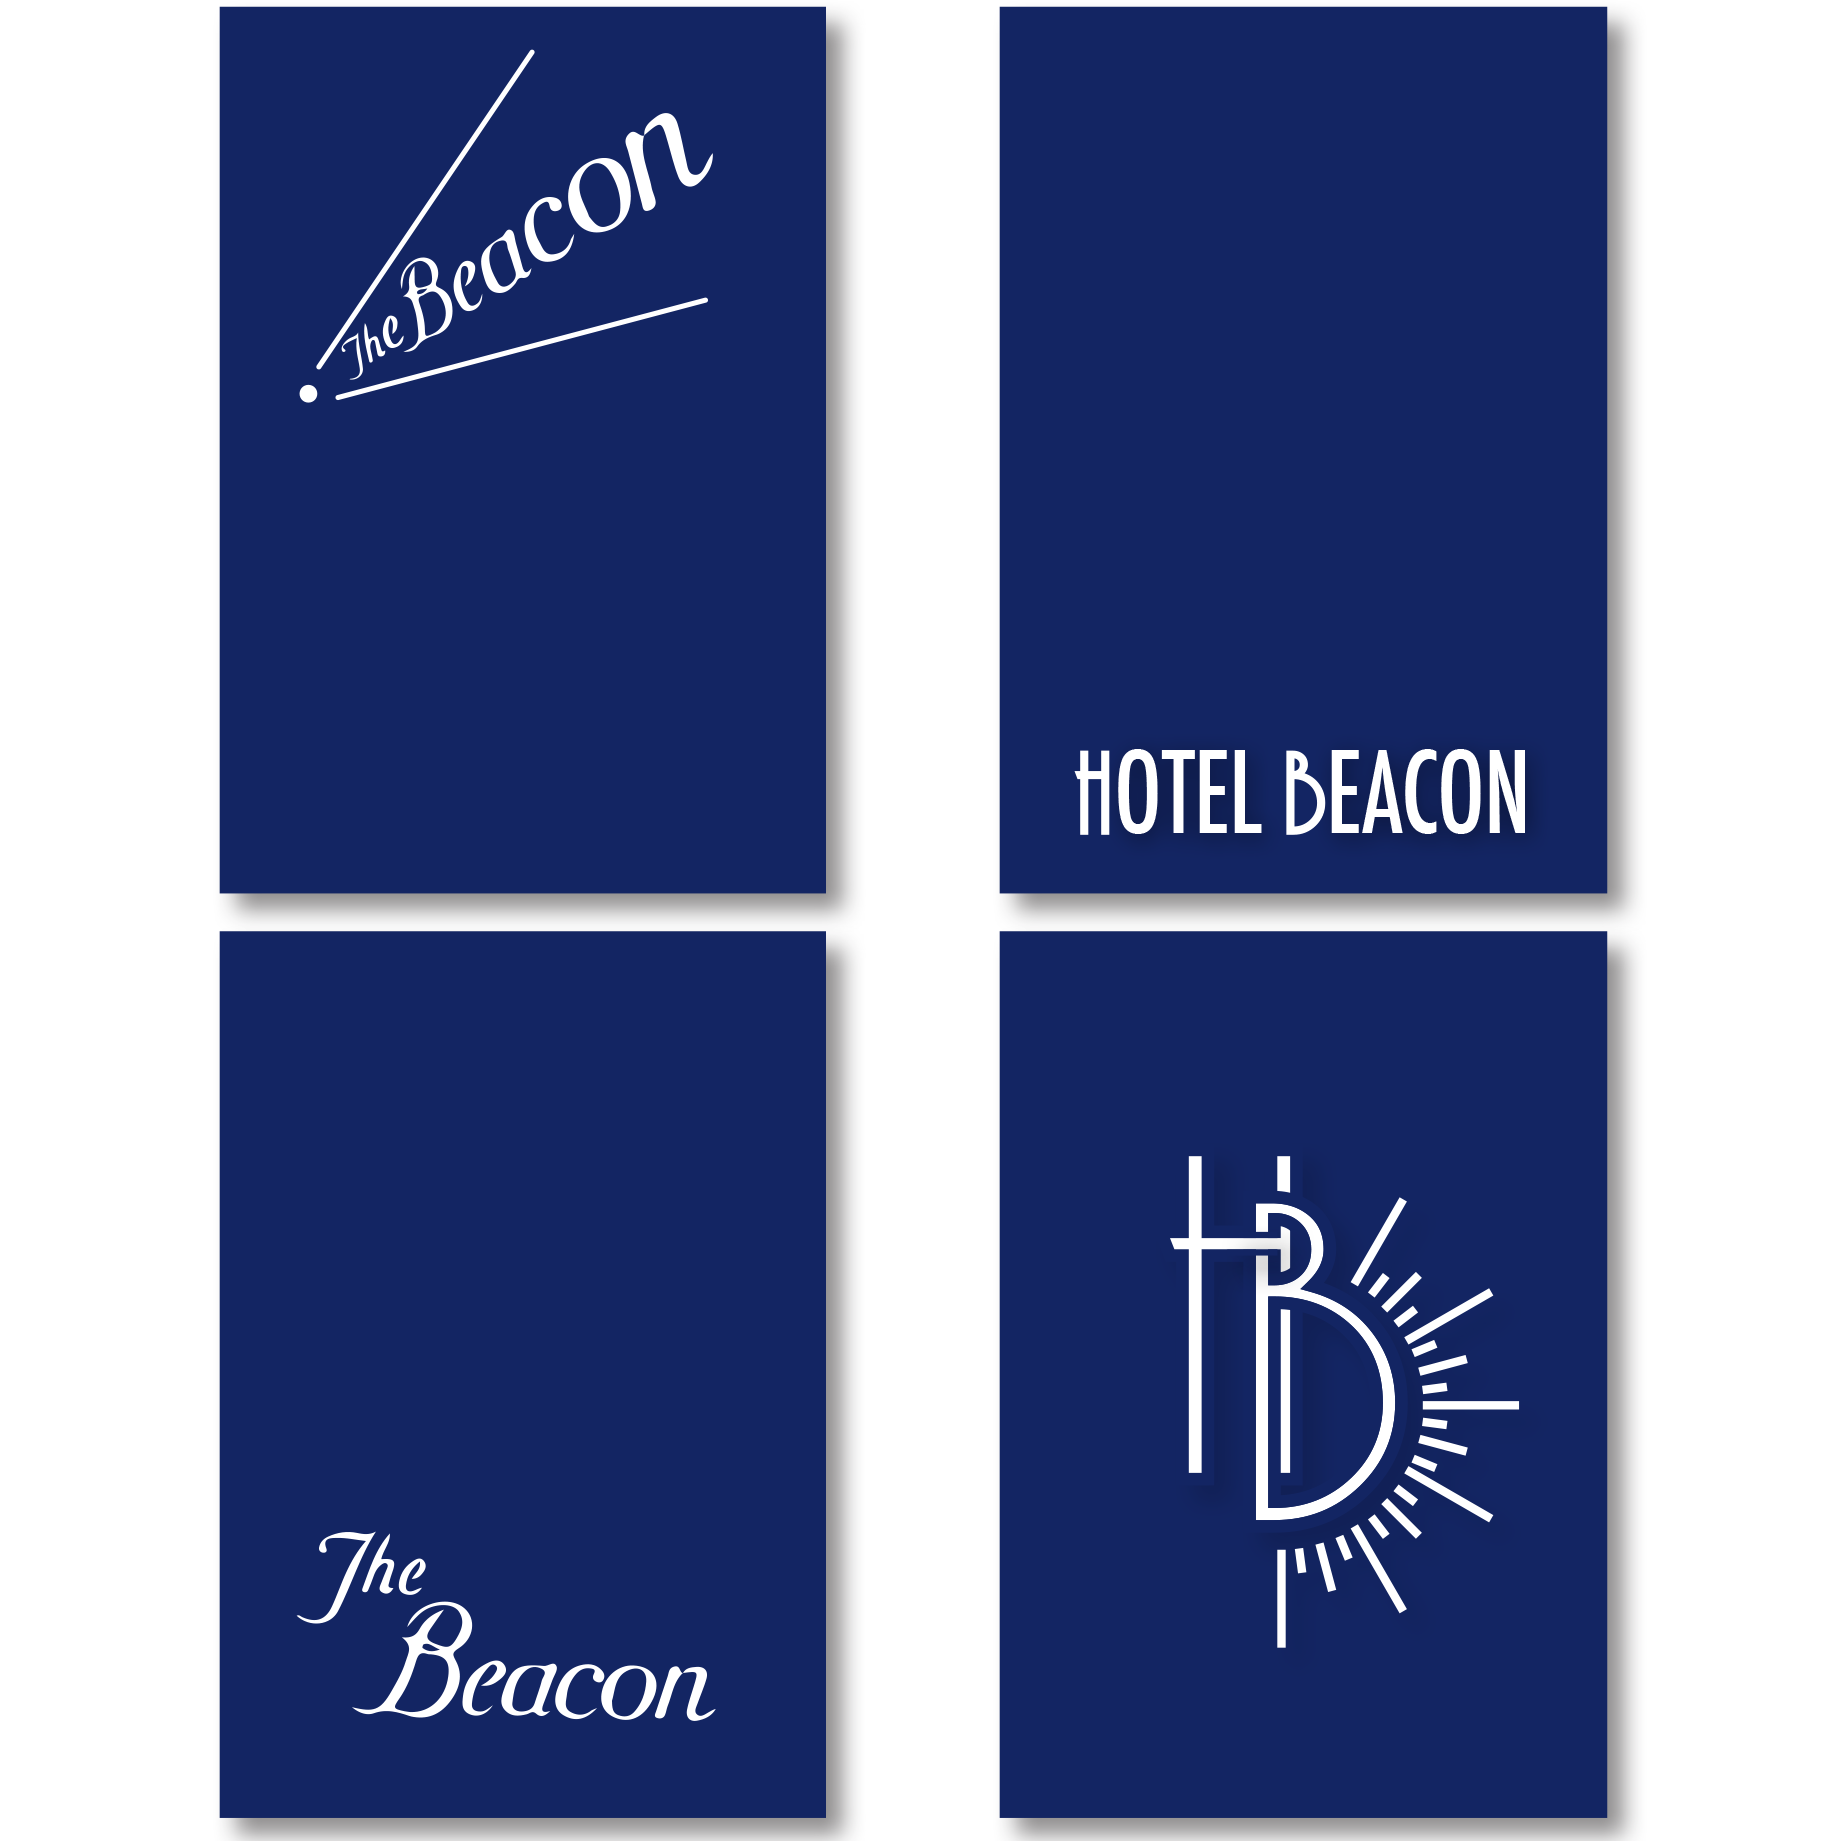 Beacon Hotel_logos01.png